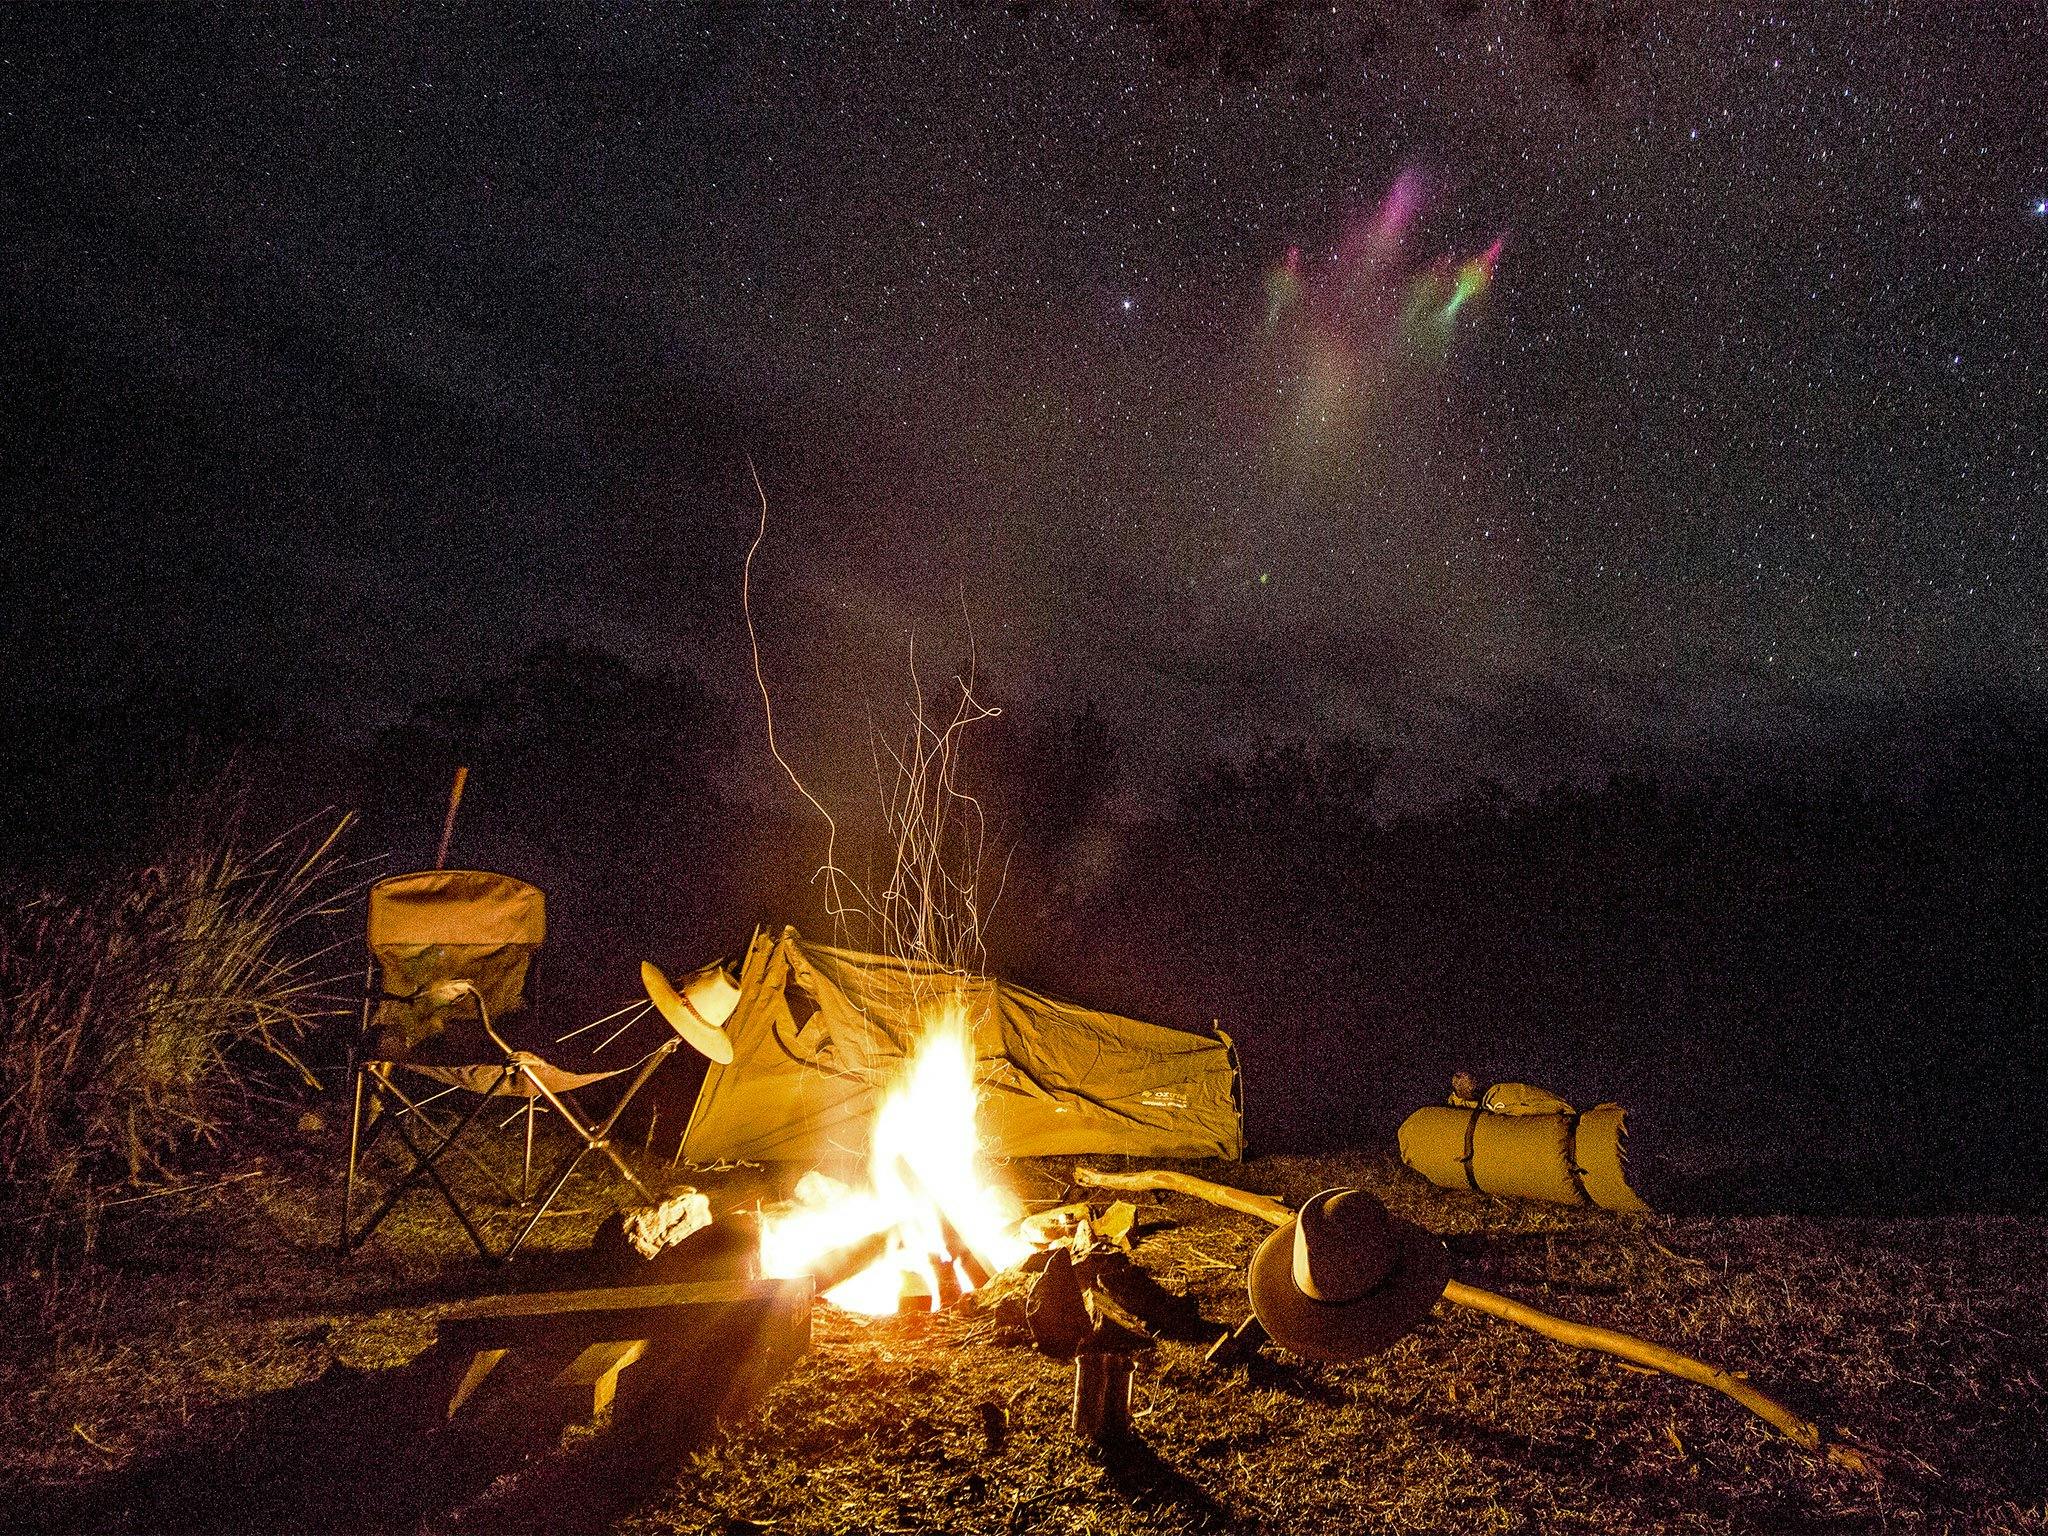 Campfire and camp at night.